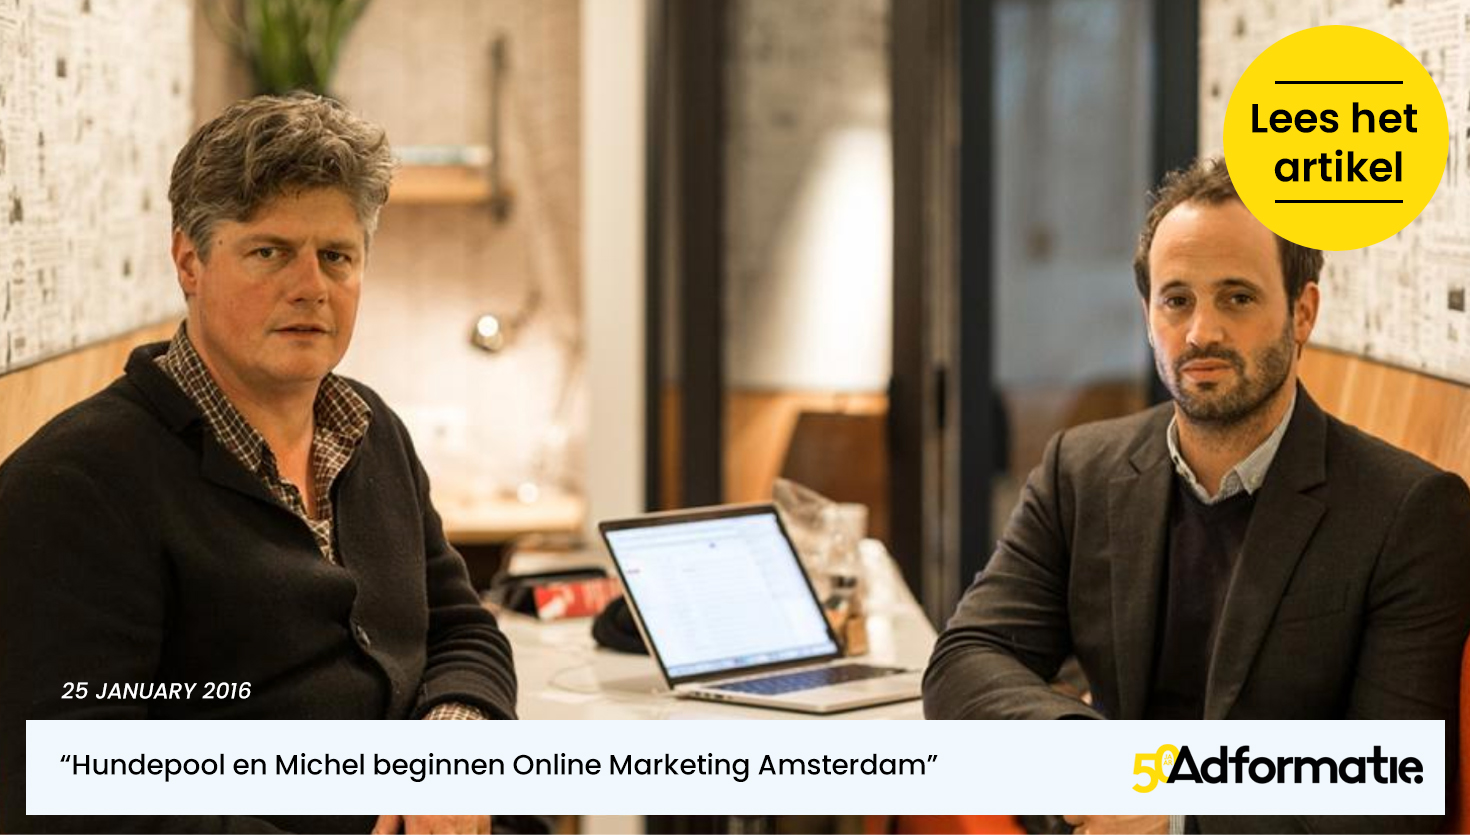 Online Marketing Amsterdam Adformatie